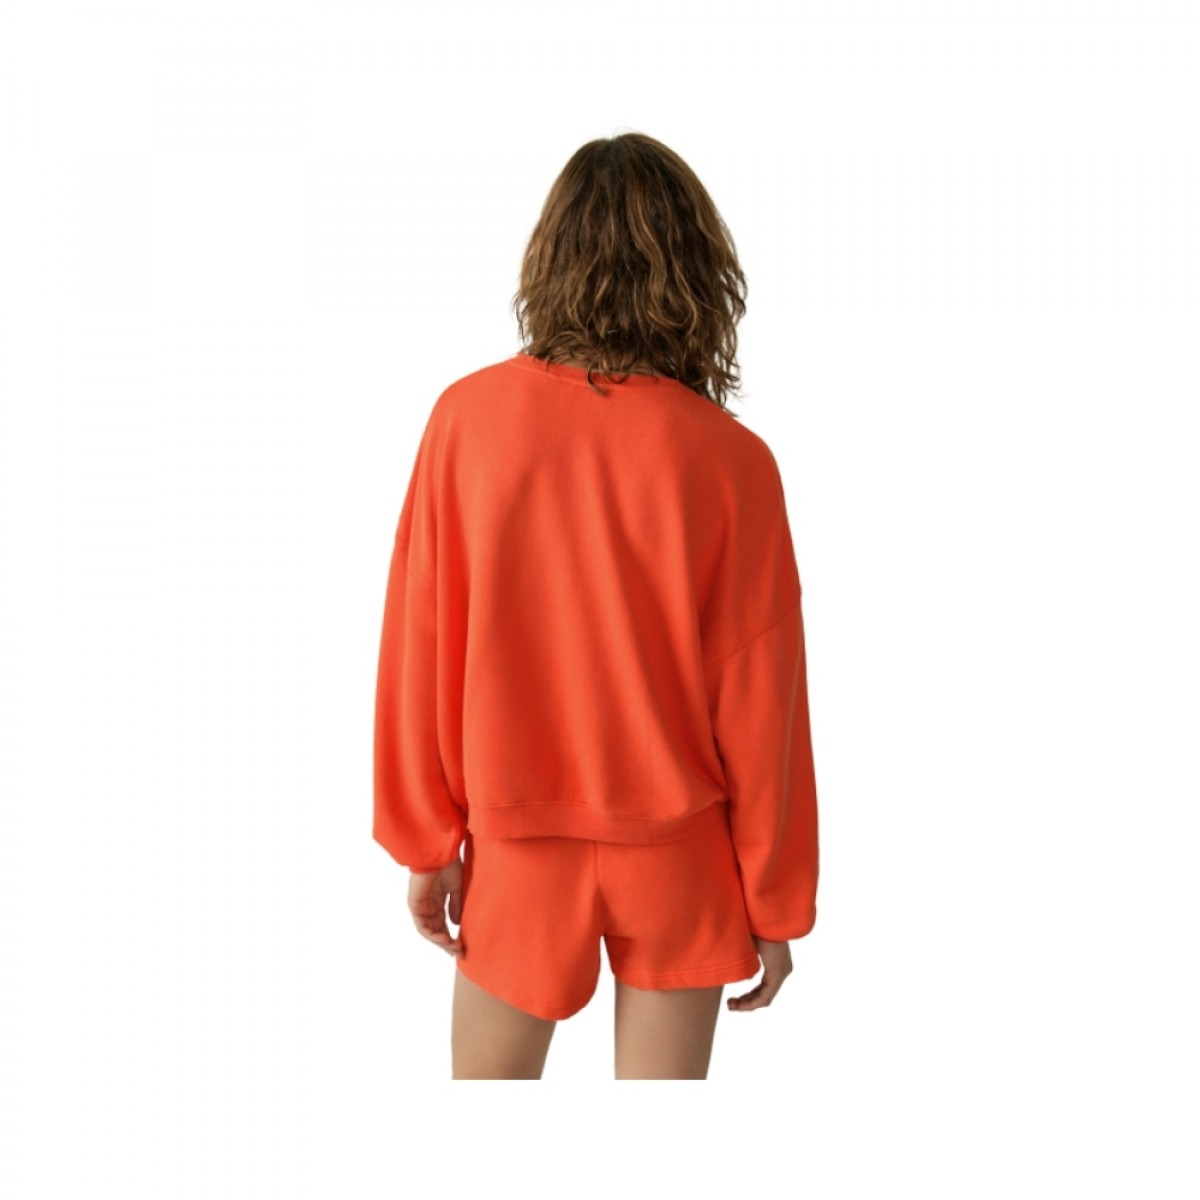 hapylife sweatshirt - vintage ember - model ryg